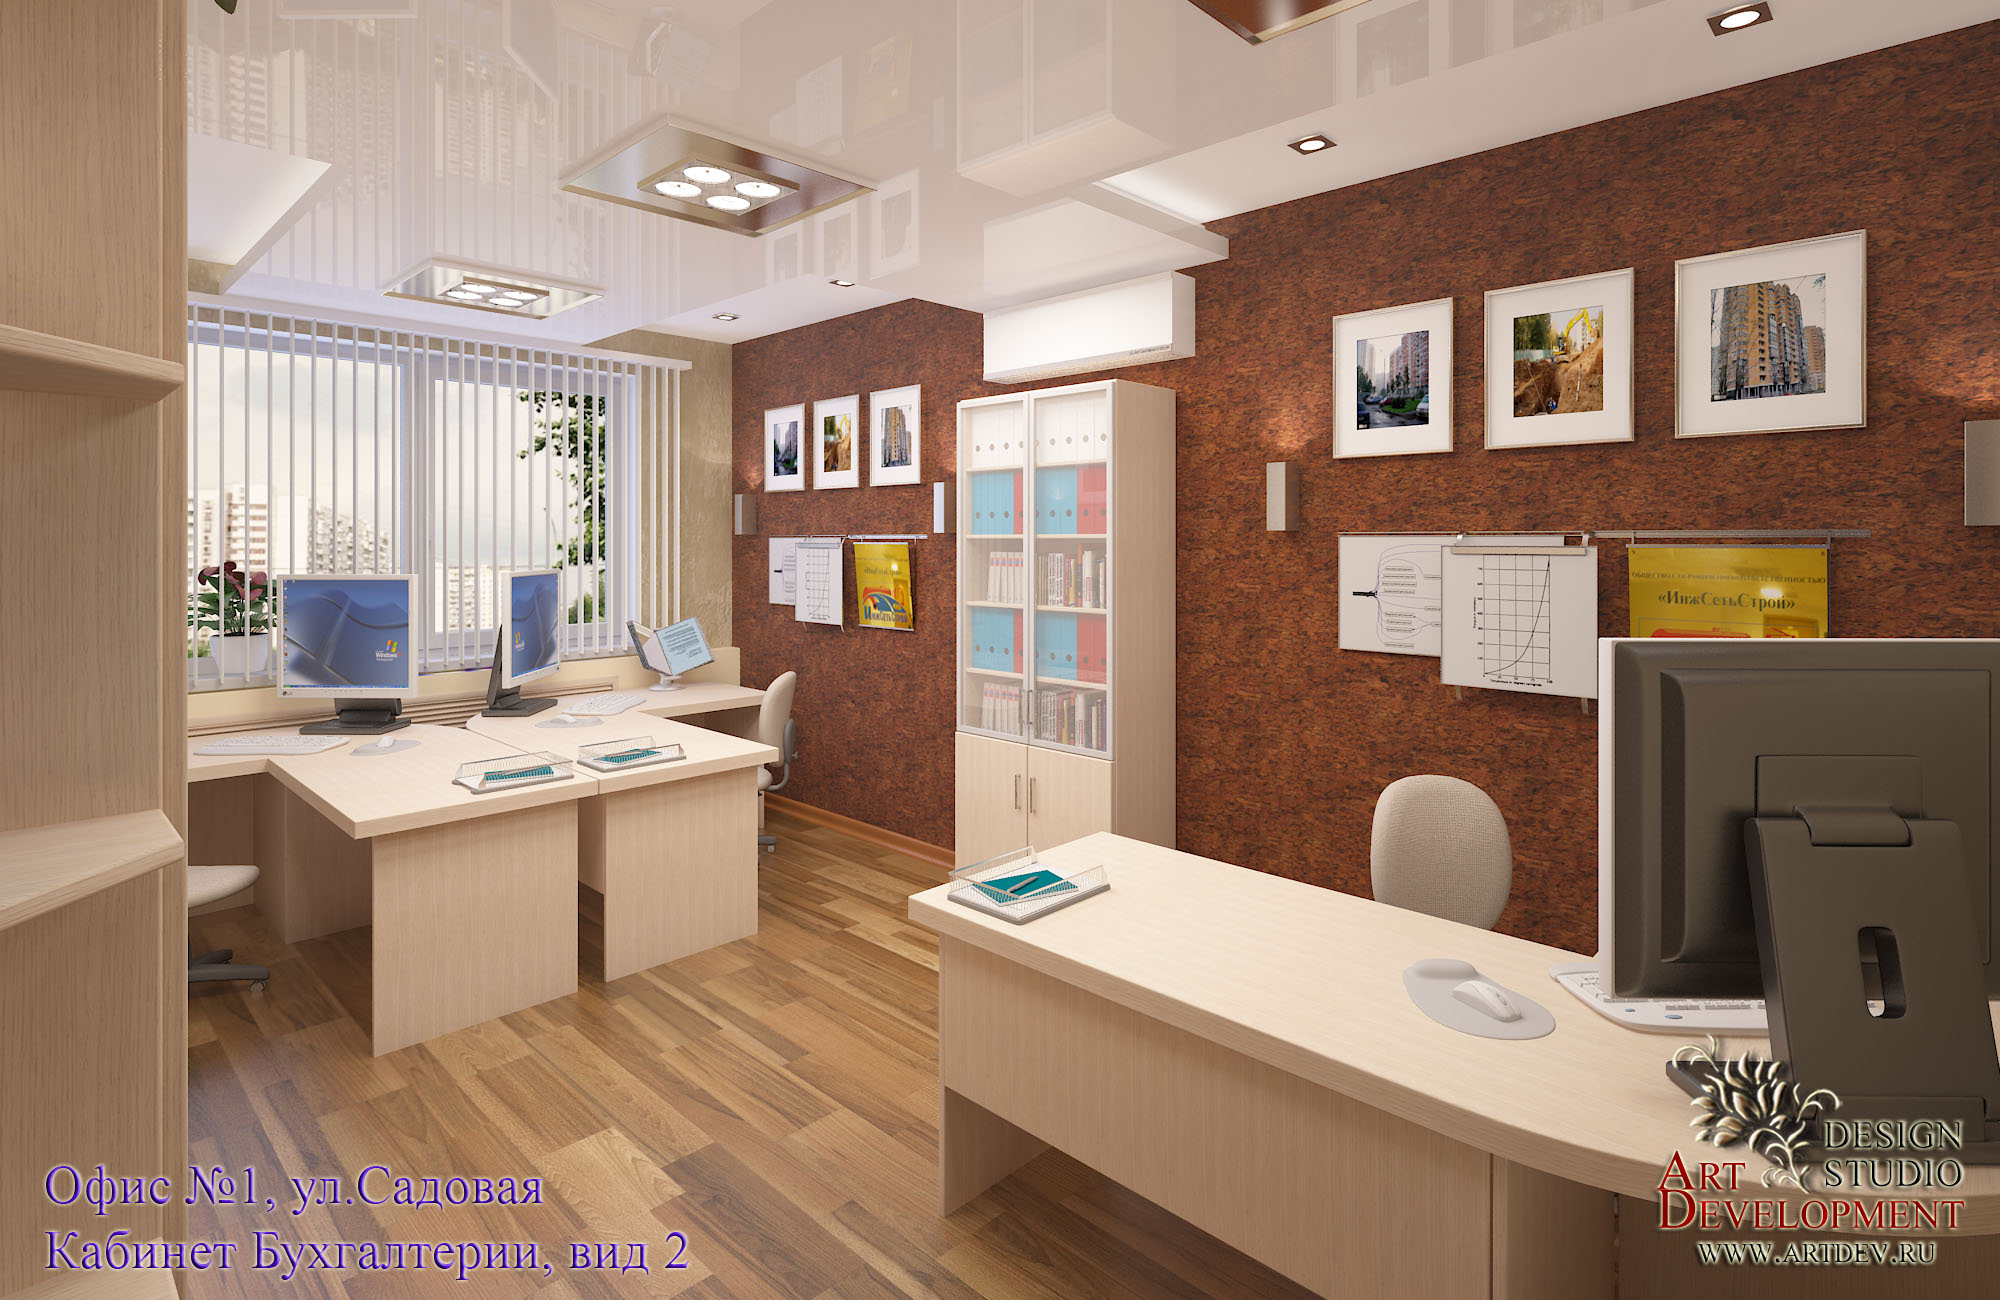 Дизайн бухгалтерии в офисе фото кабинета